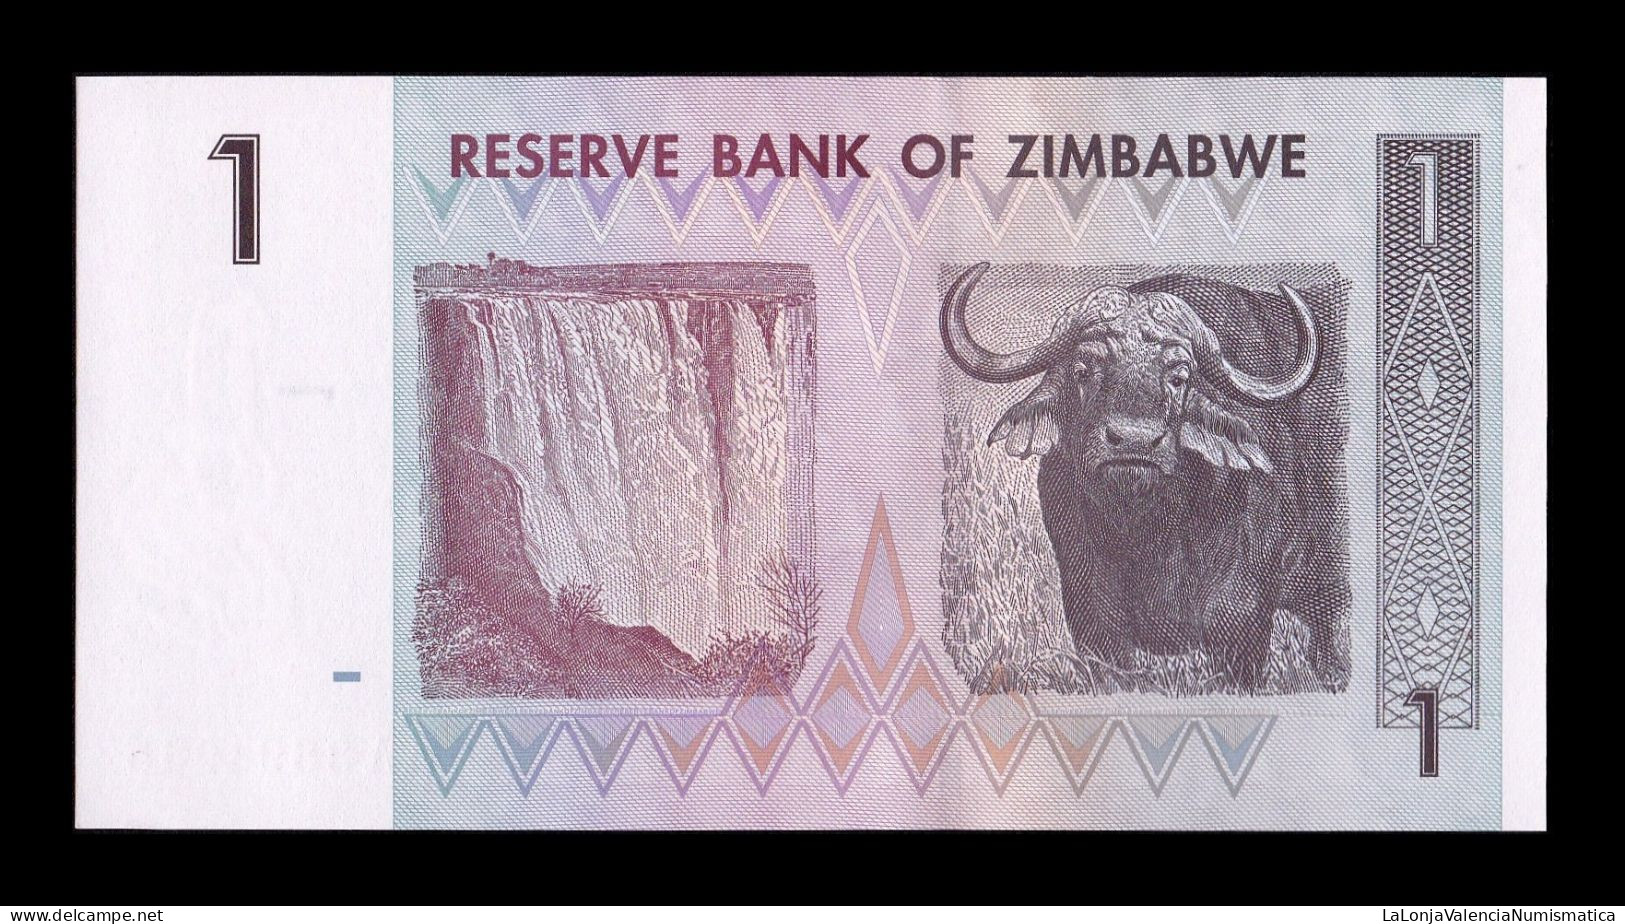 Zimbabwe 1 Dollar 2007 Pick 65 Sc Unc - Zimbabwe